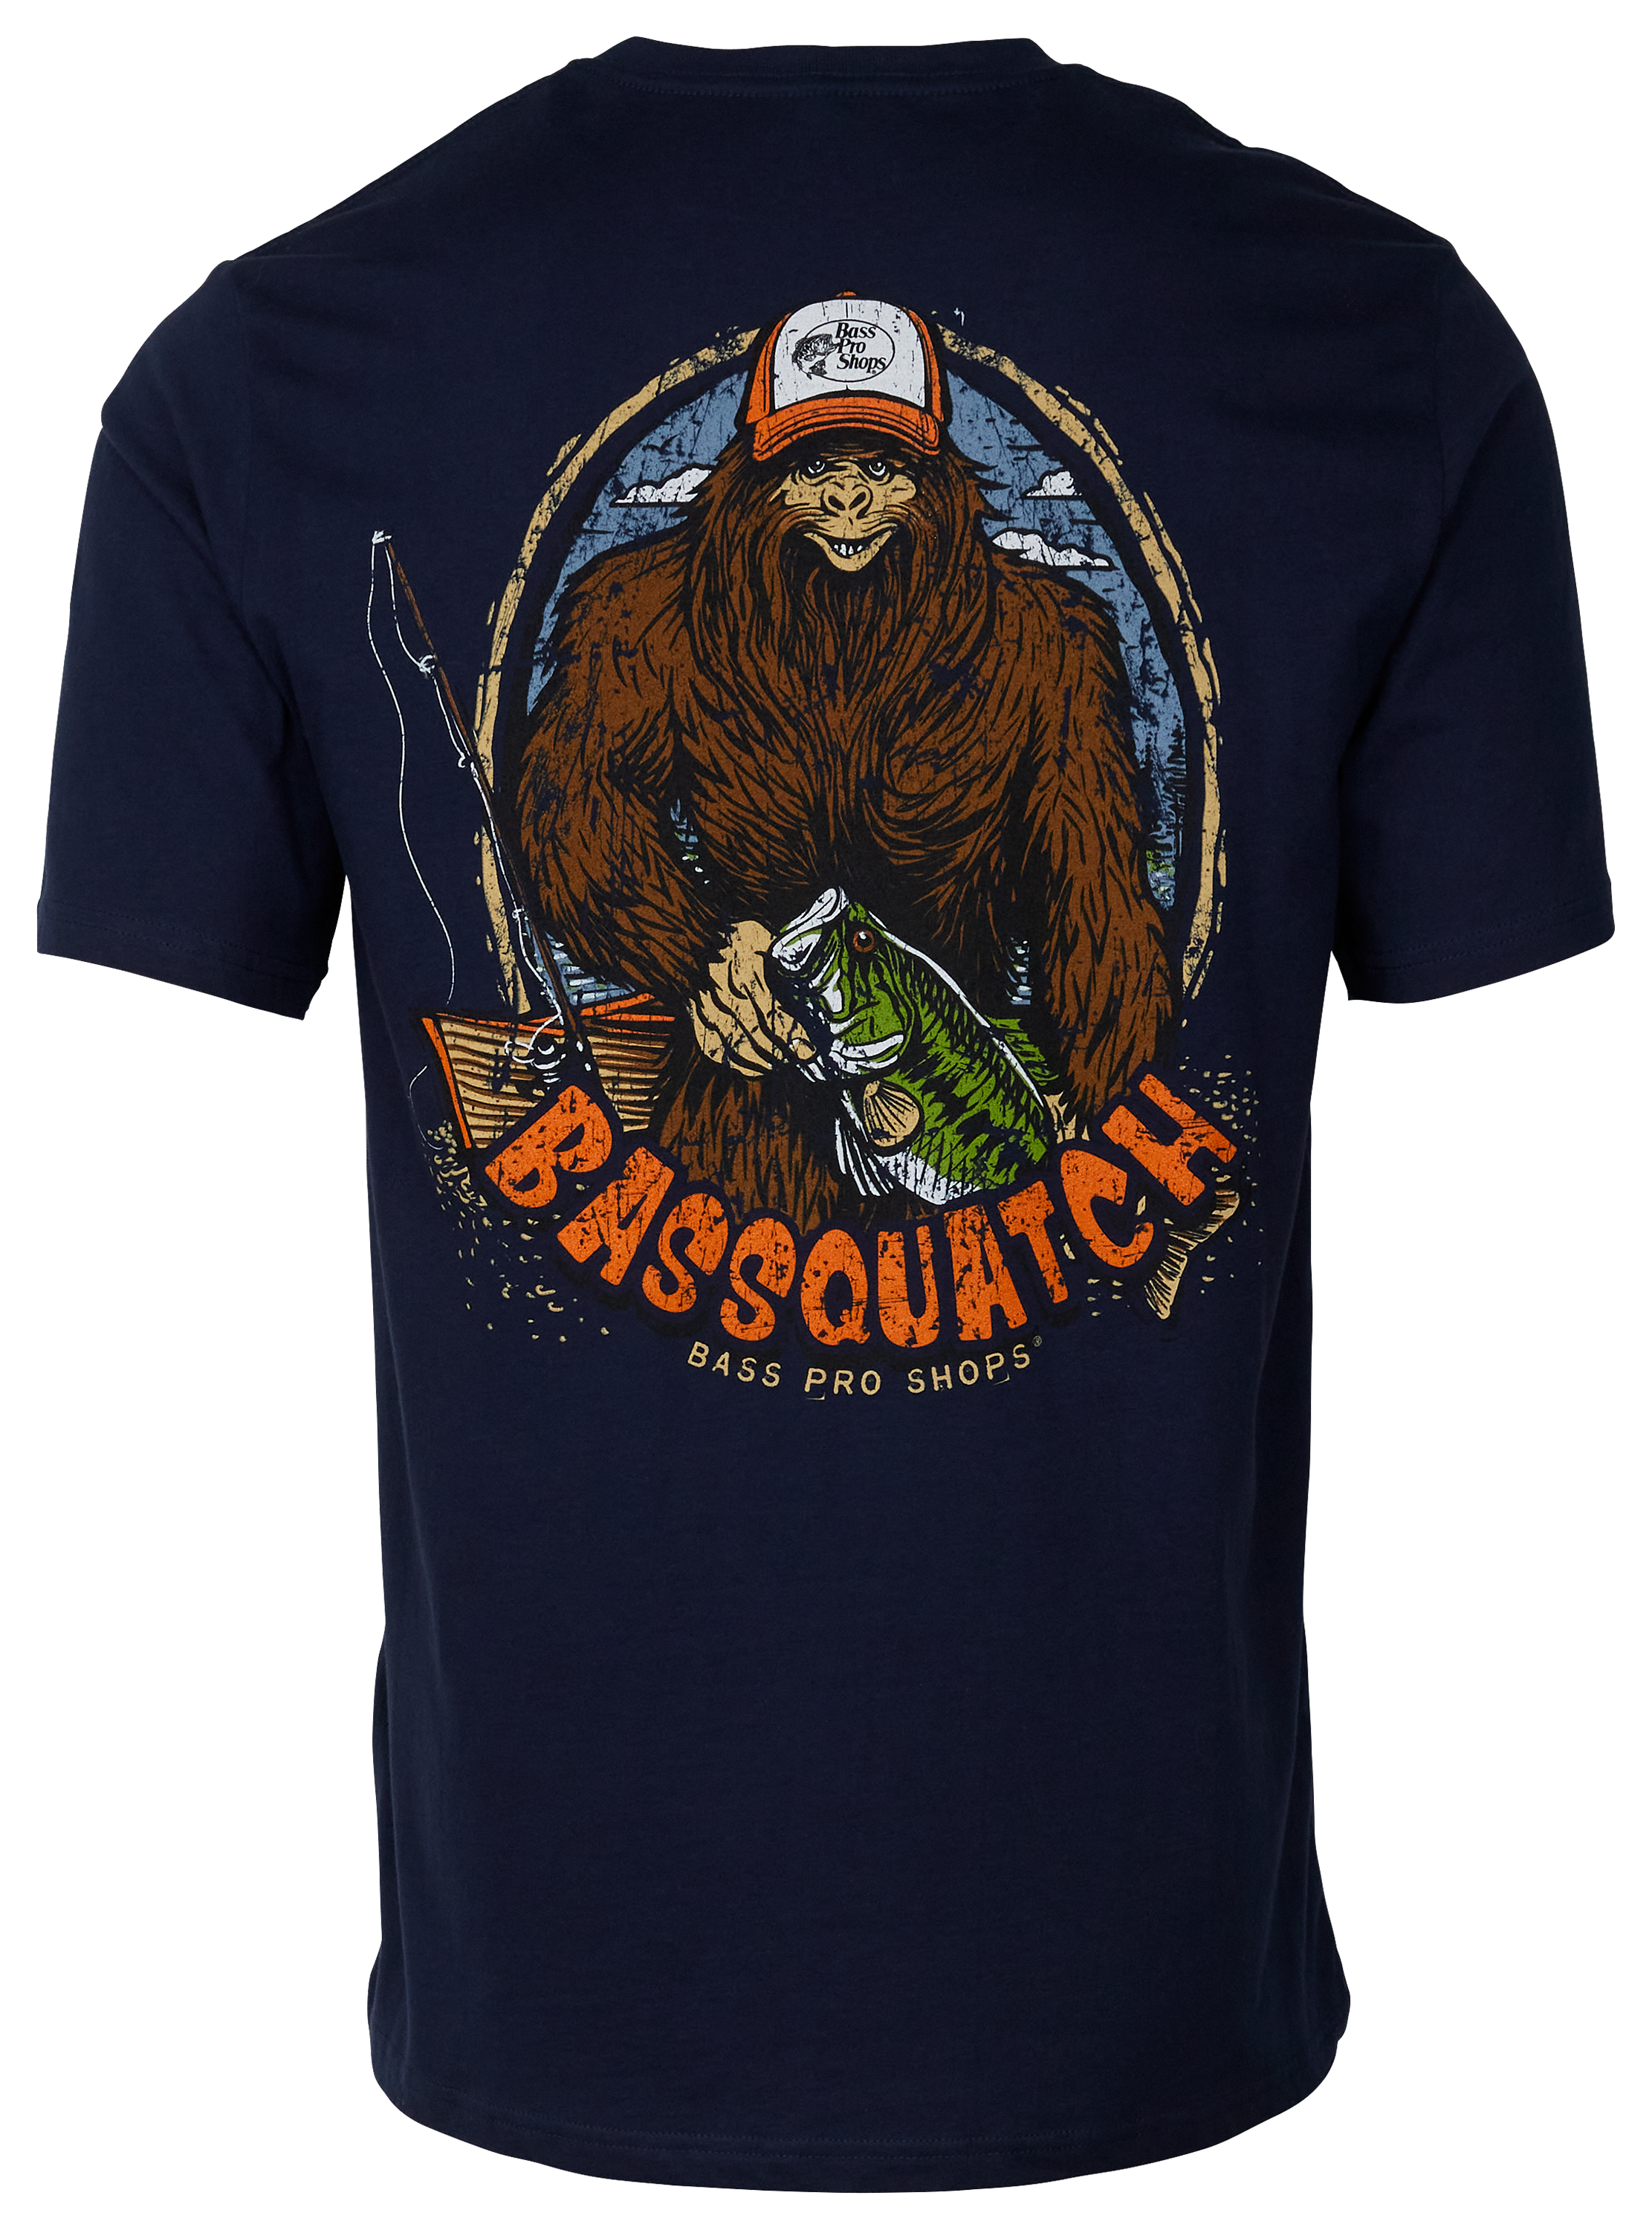 Bass Pro Shops Bassquatch Short-Sleeve T-Shirt for Men - Navy - XL